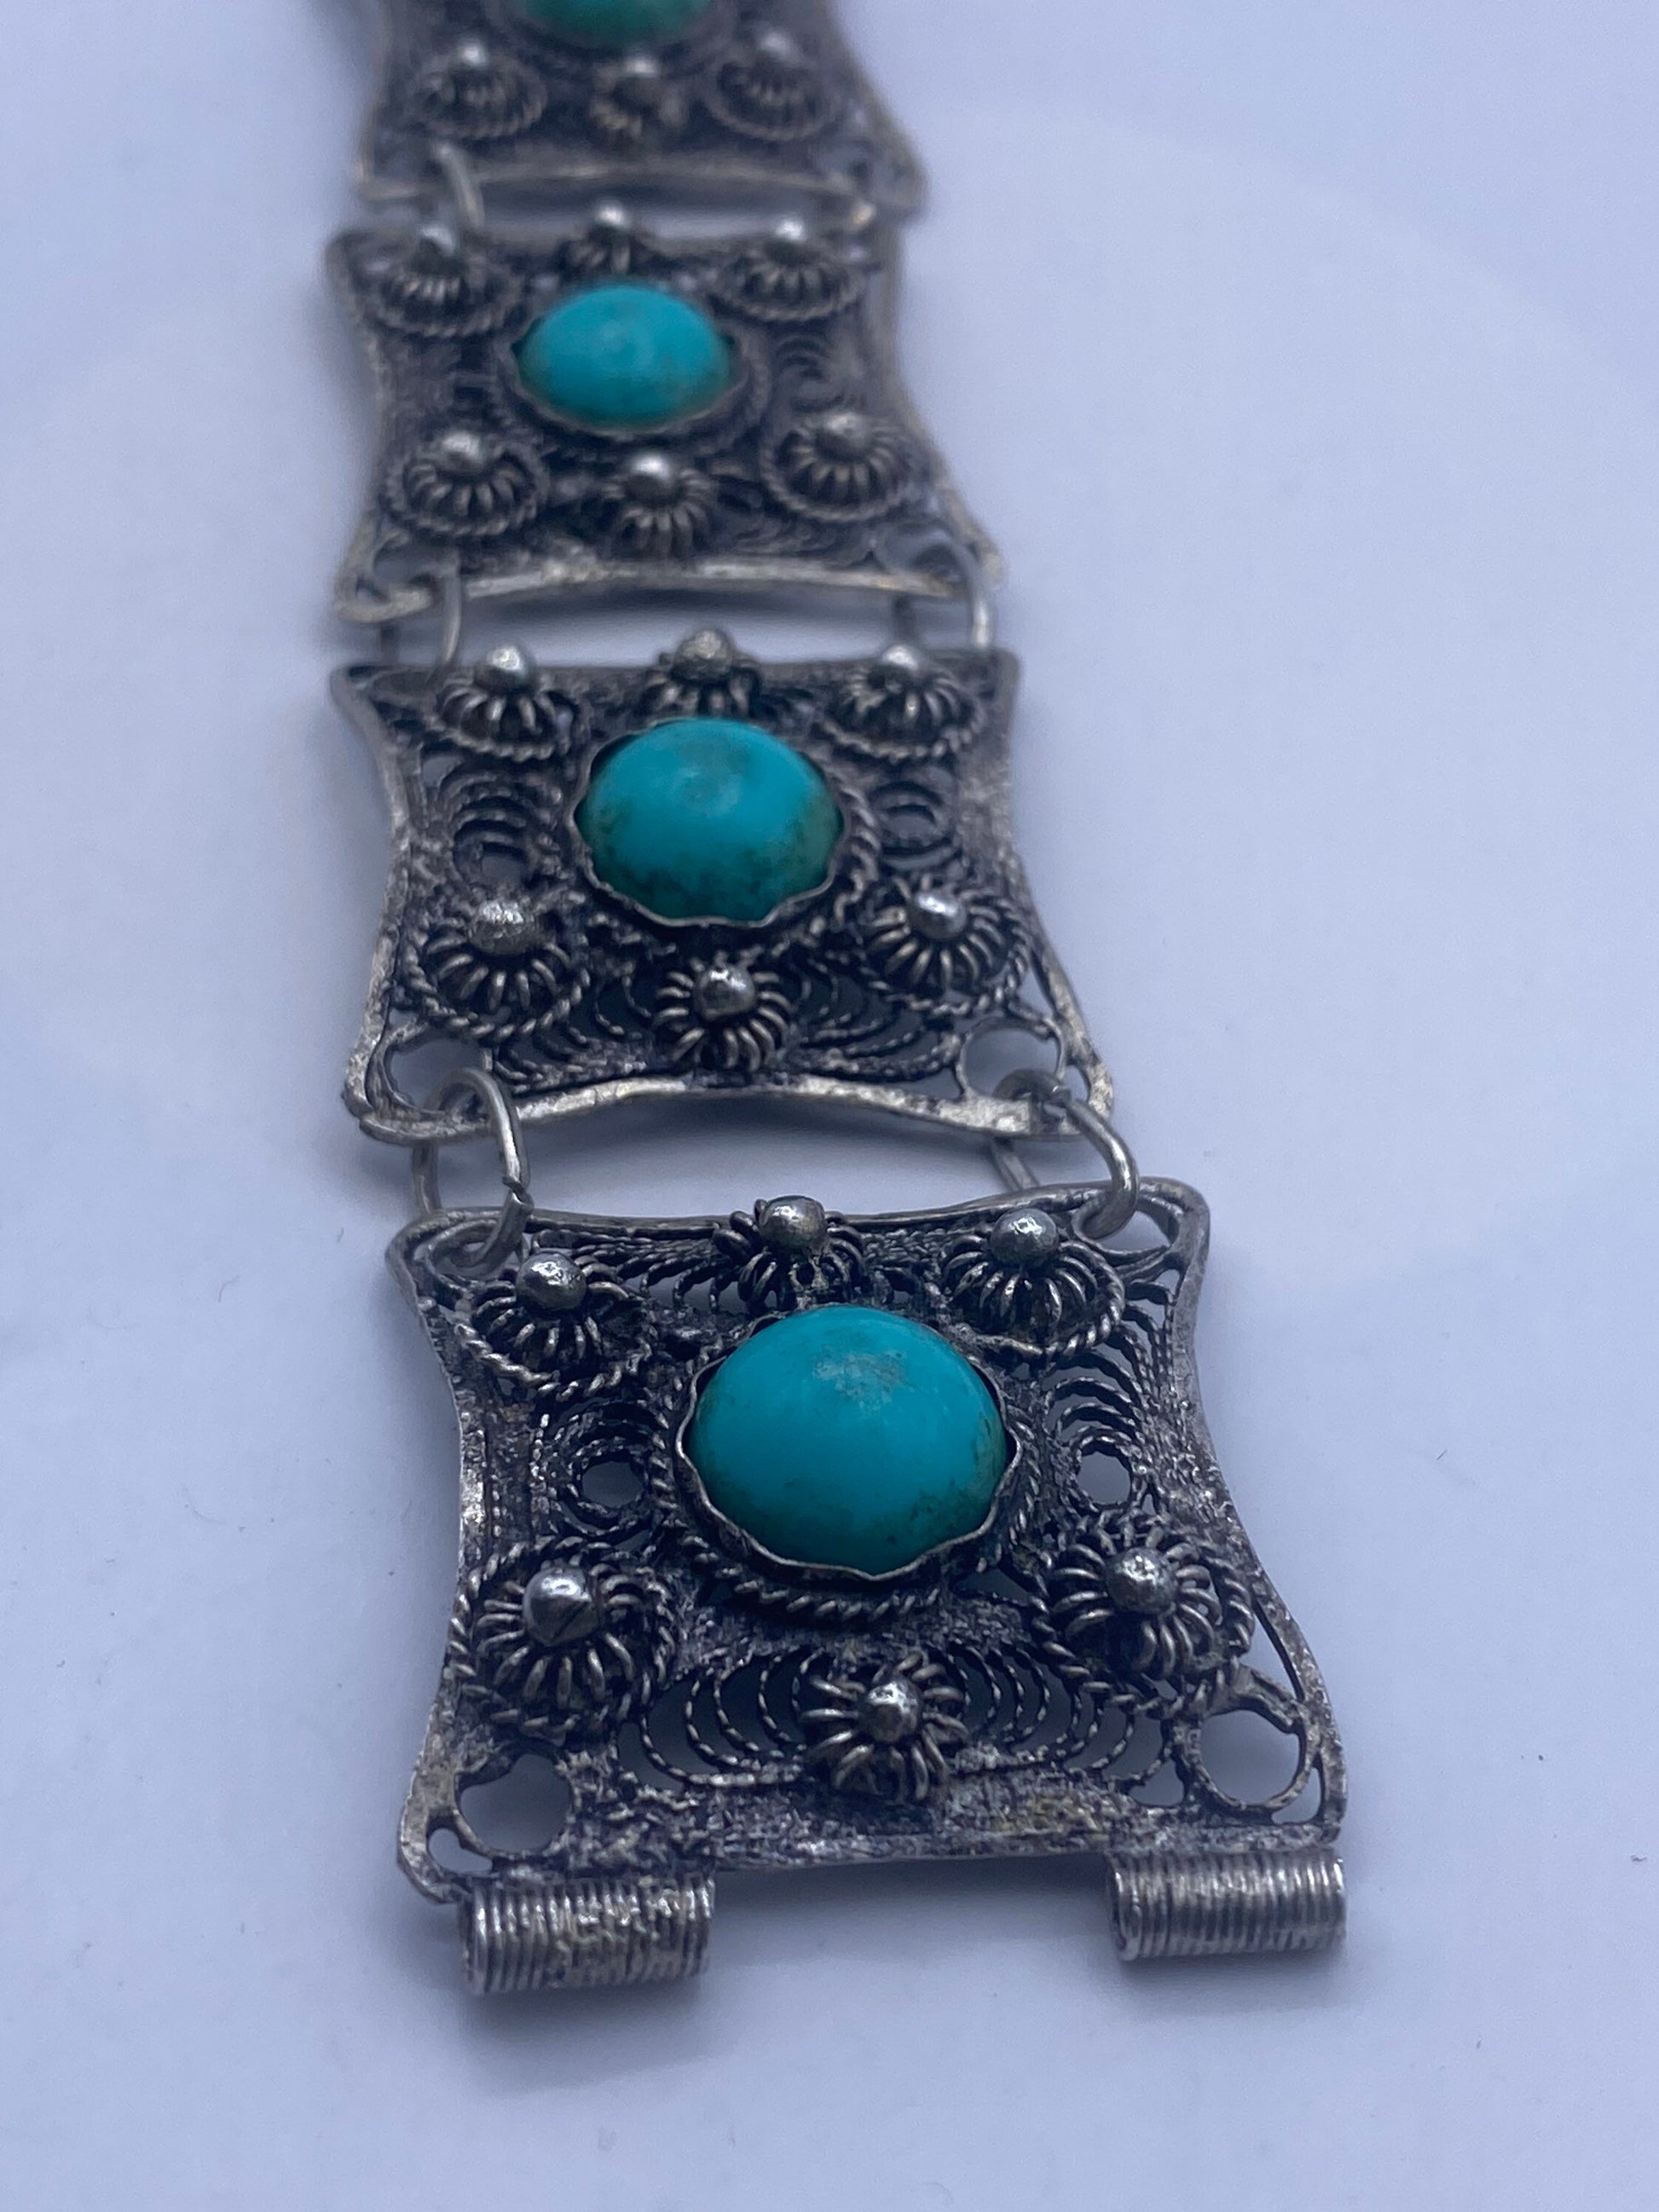 Vintage 925 Sterling Silver Filigree Bracelet